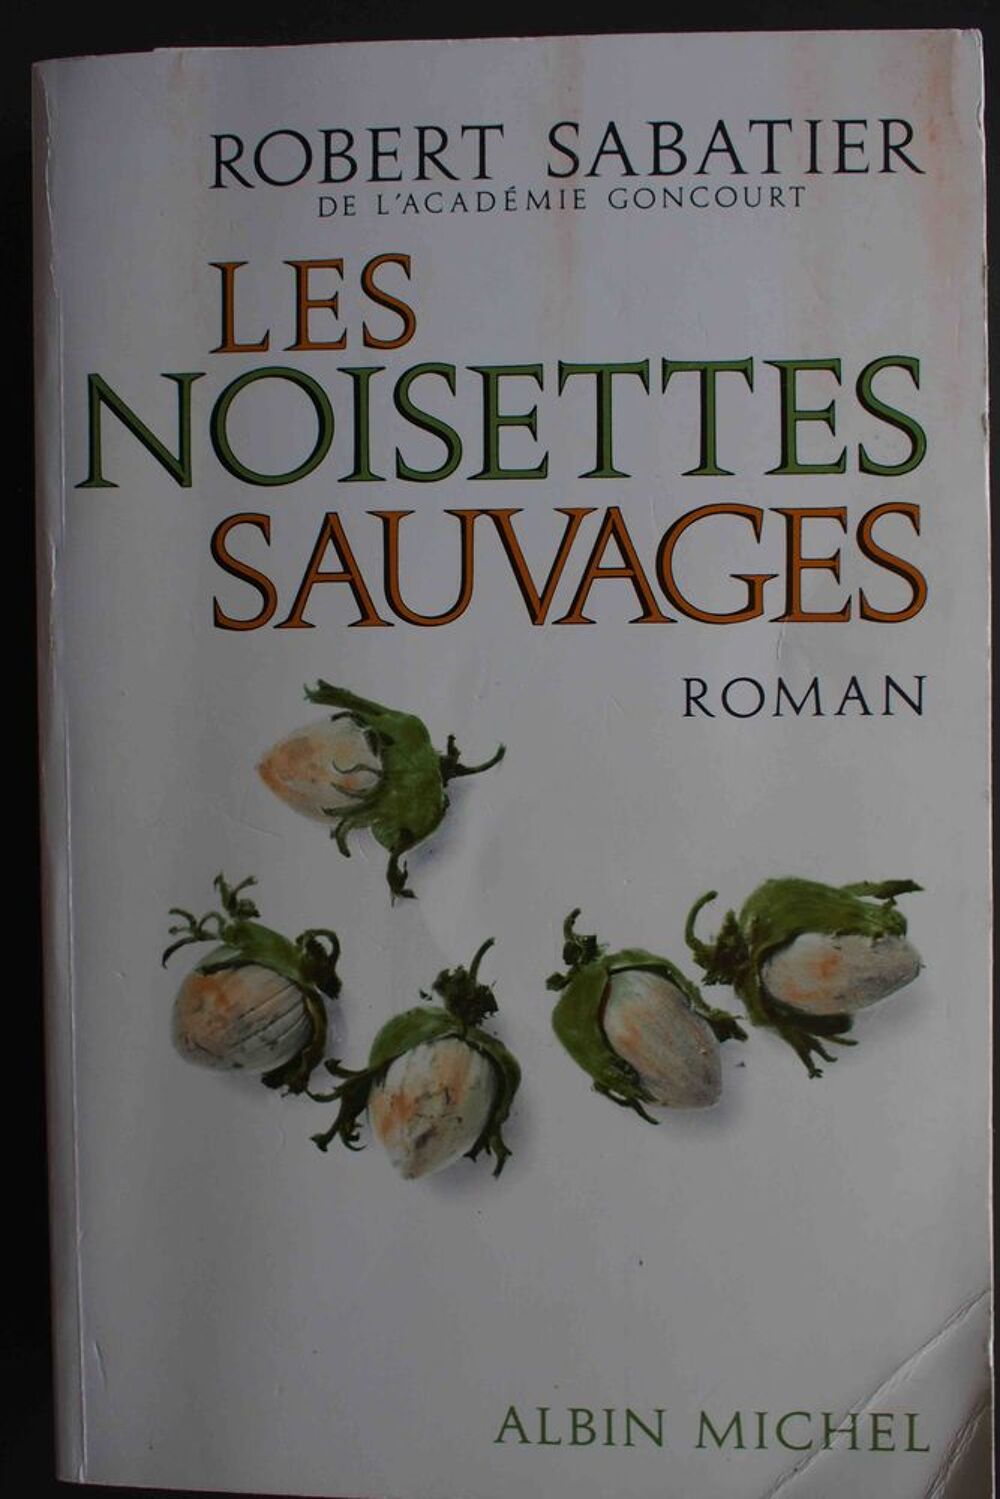 Les noisettes sauvages - Robert Sabatier, Livres et BD